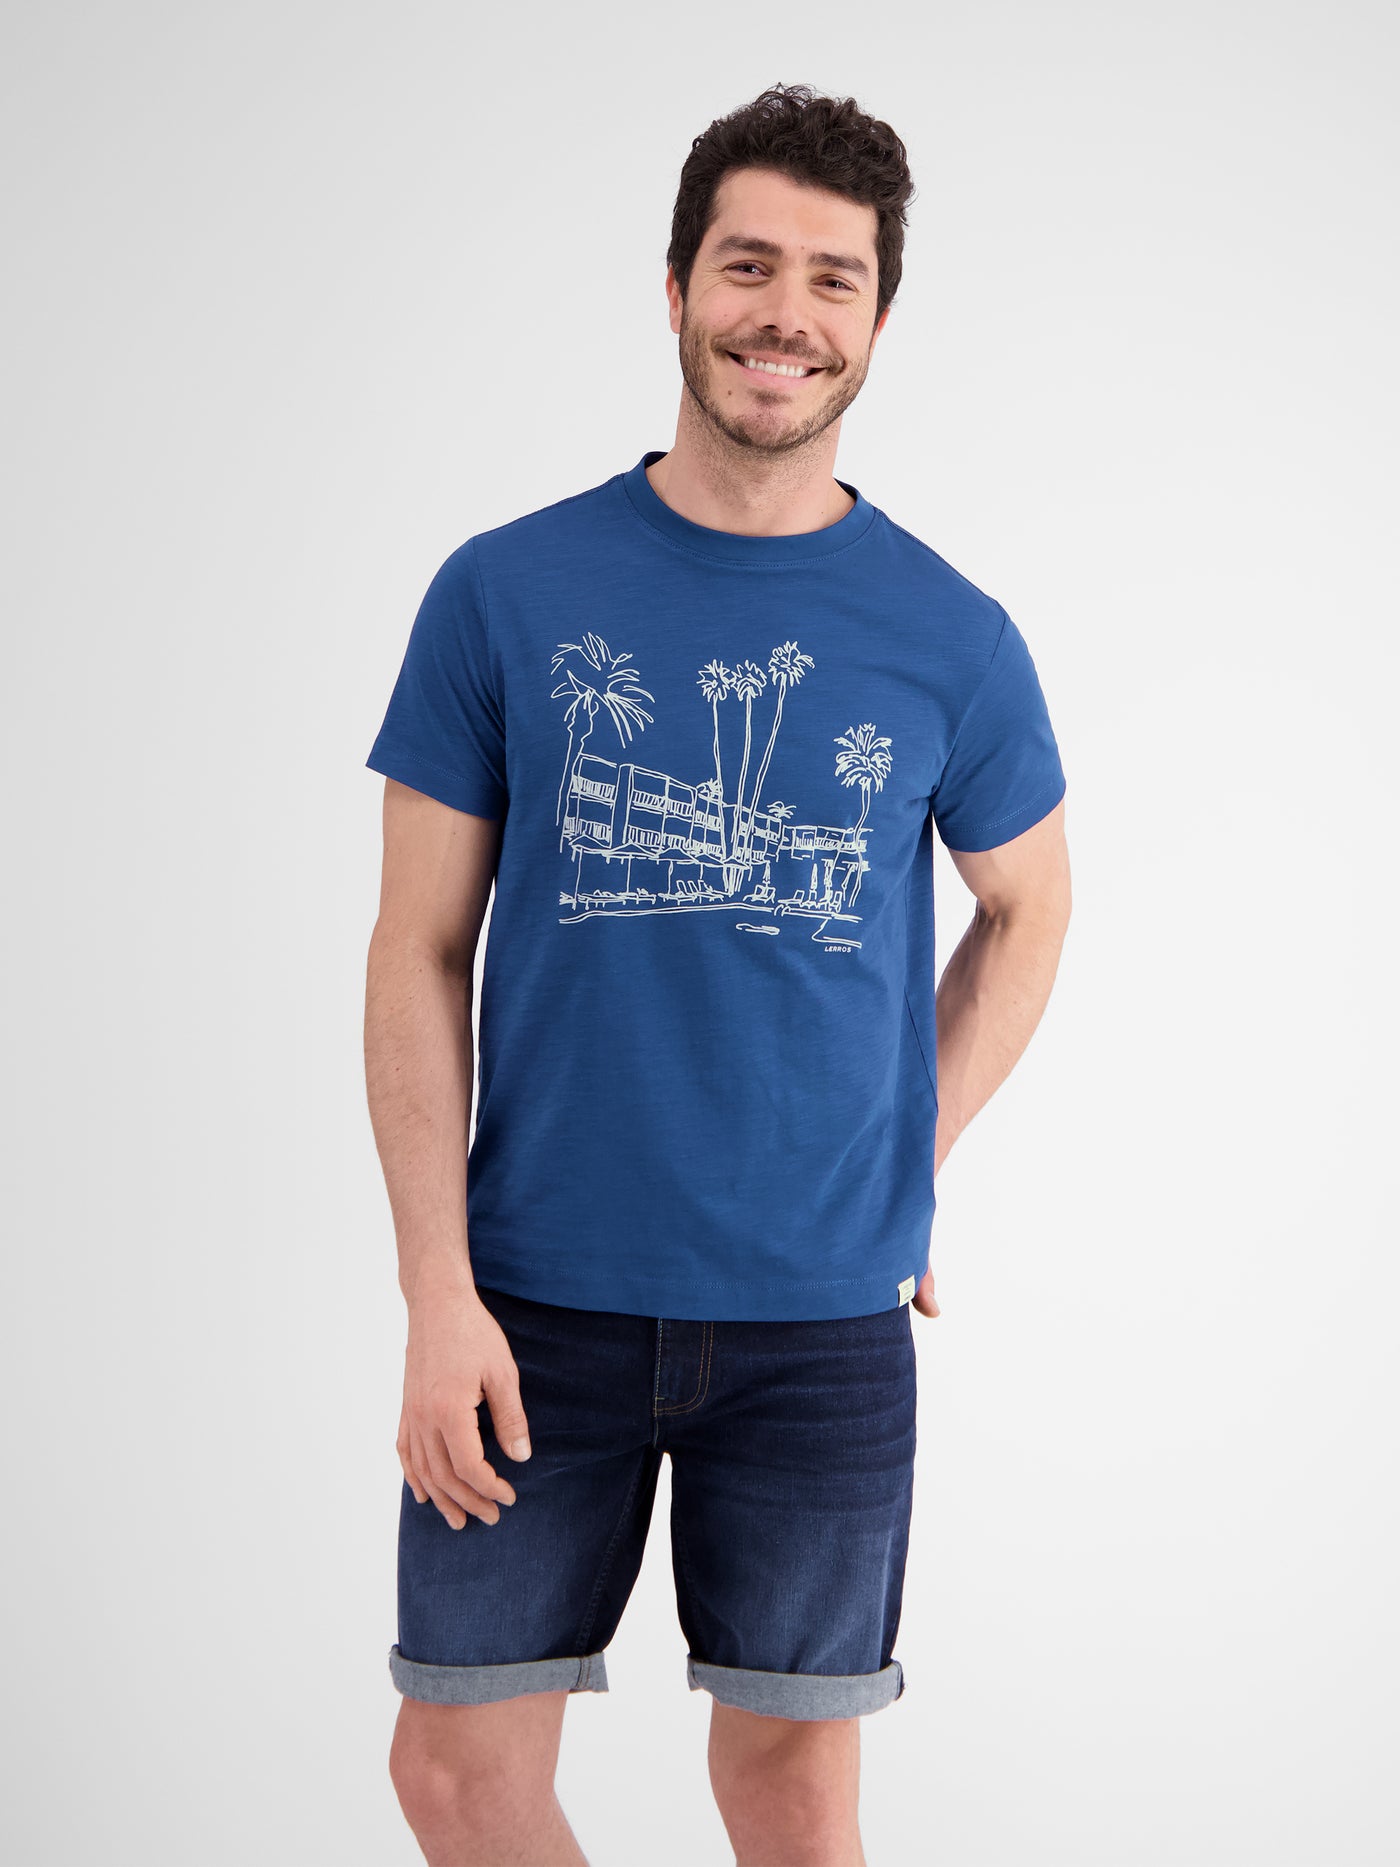 Herren T-Shirt, manuell designter Frontprint